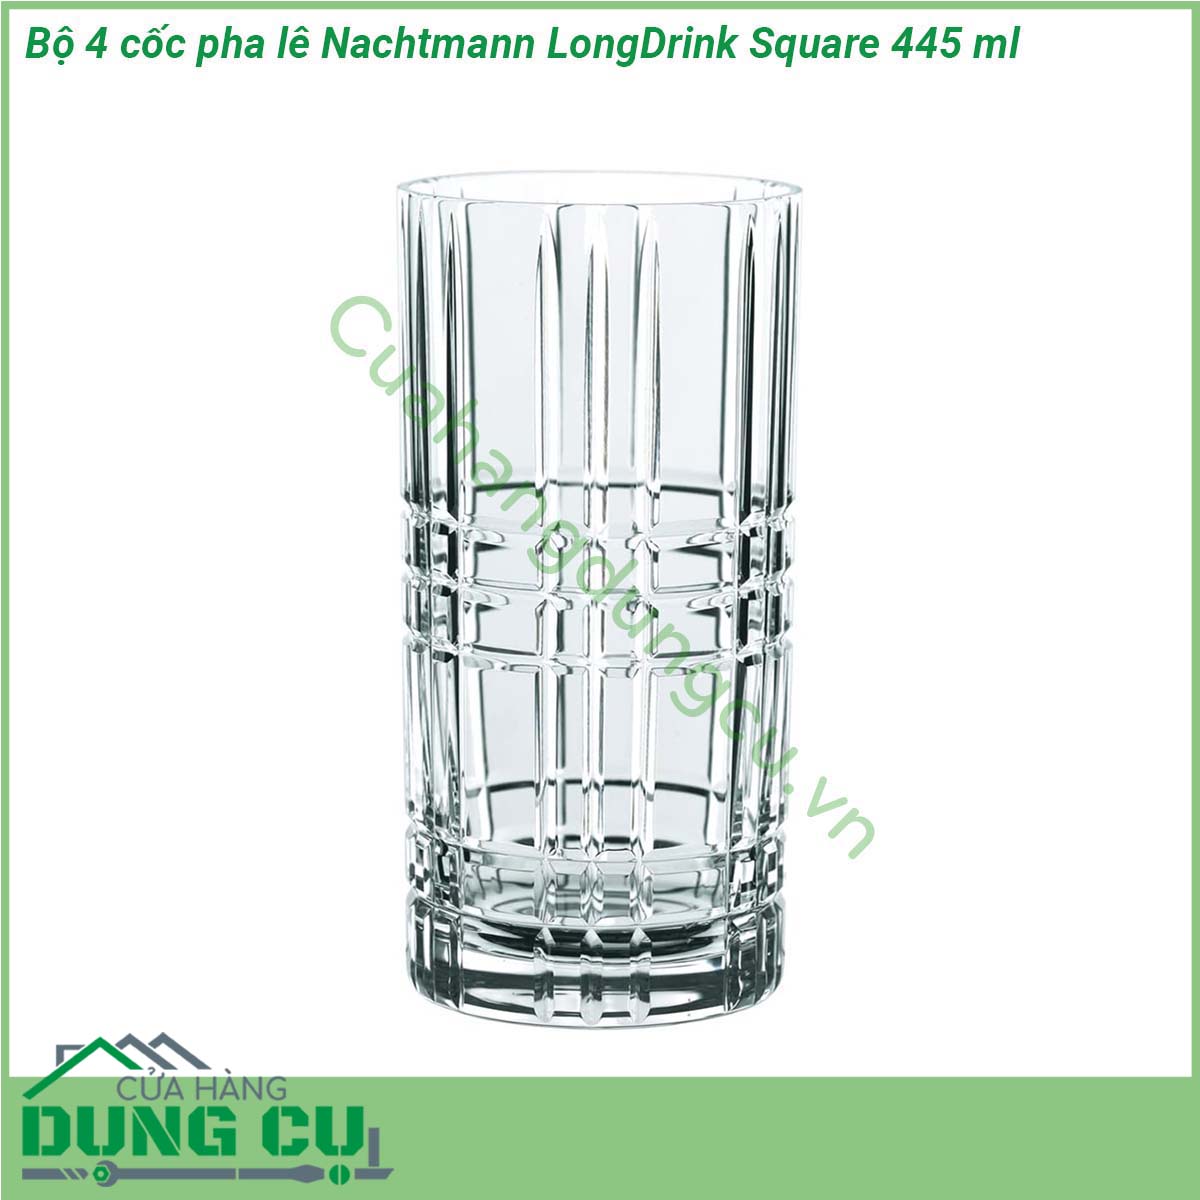 Bộ 4 cốc pha lê Nachtmann LongDrink Square 445 ml được làm bằng nguyên liệu pha lê trong suốt kết hợp với các họa tiết góc cạnh  phản chiếu ánh sáng tốt  Cốc phù hợp và an toàn để đựng tất cả các loại đồ uống đặc biệt là là những đồ uống có màu sắc như nước ép các loại trái cây